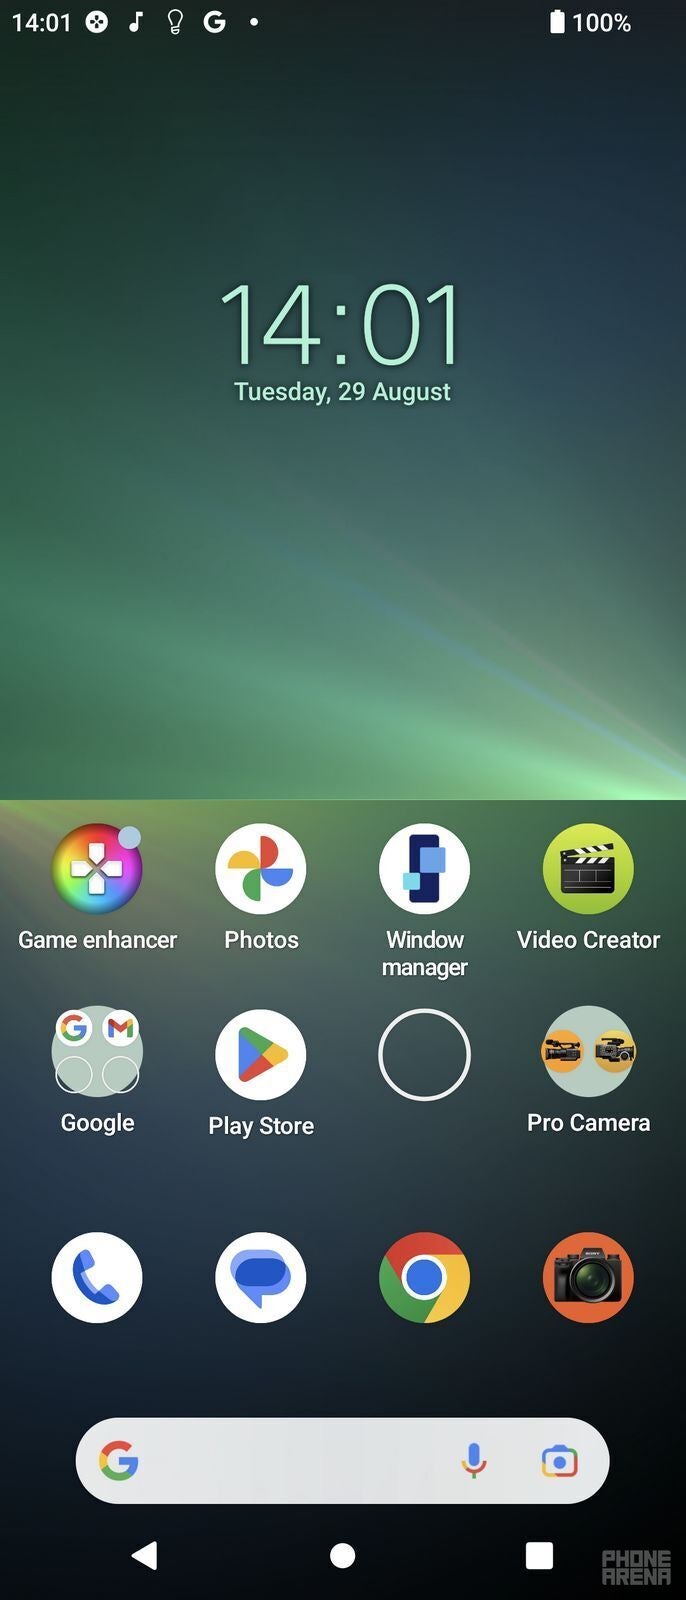 Xperia 5 Mark V runs Android 13